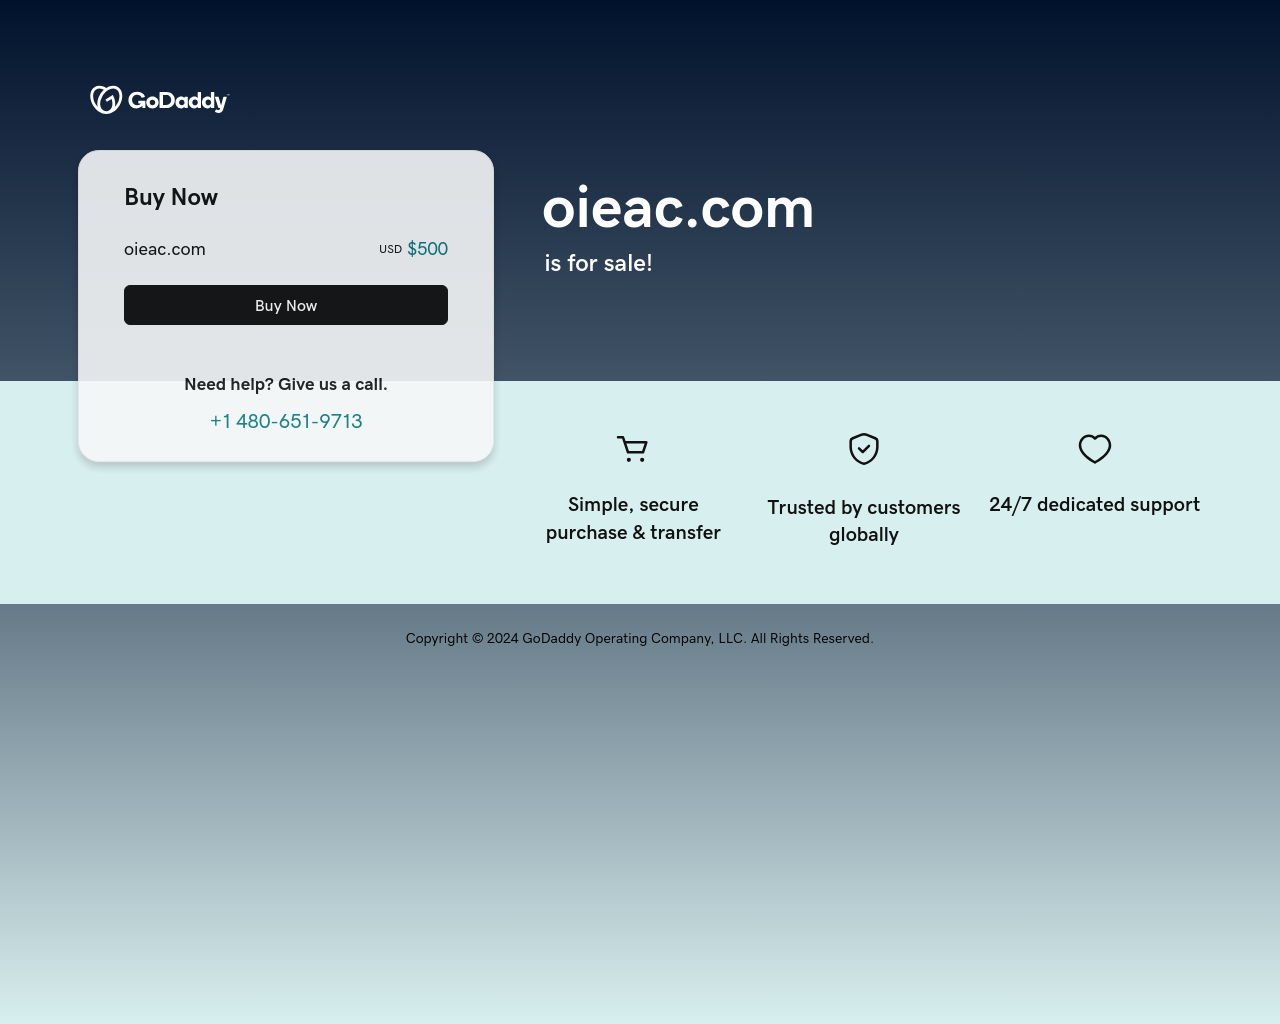 oieac.com